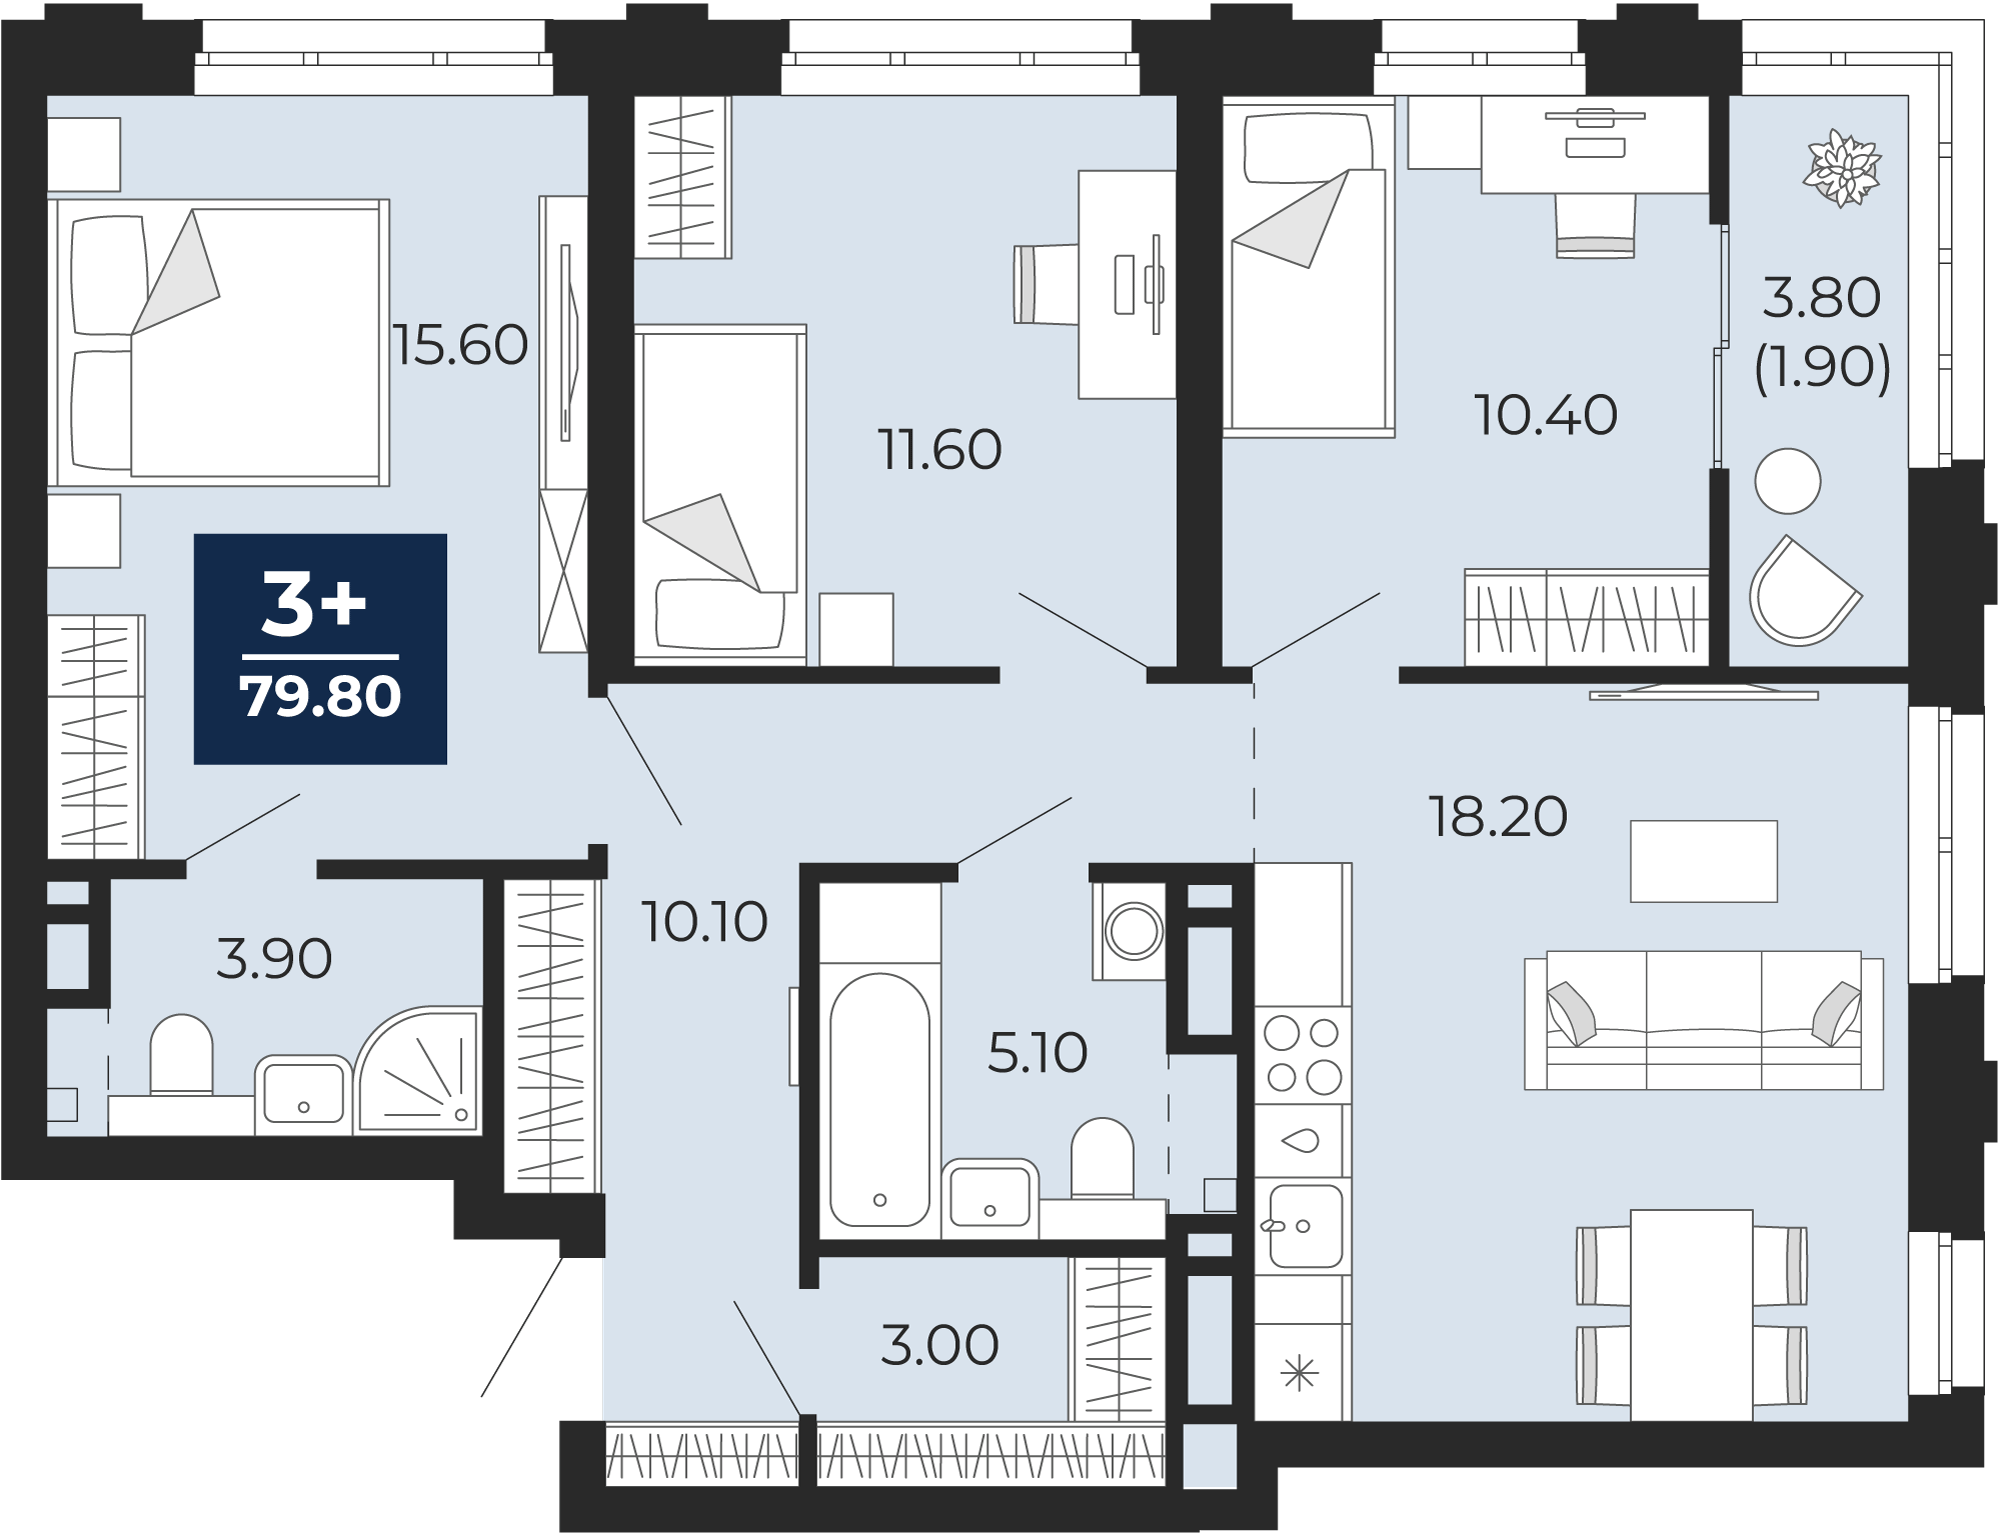 Квартира № 271, 3-комнатная, 79.8 кв. м, 4 этаж